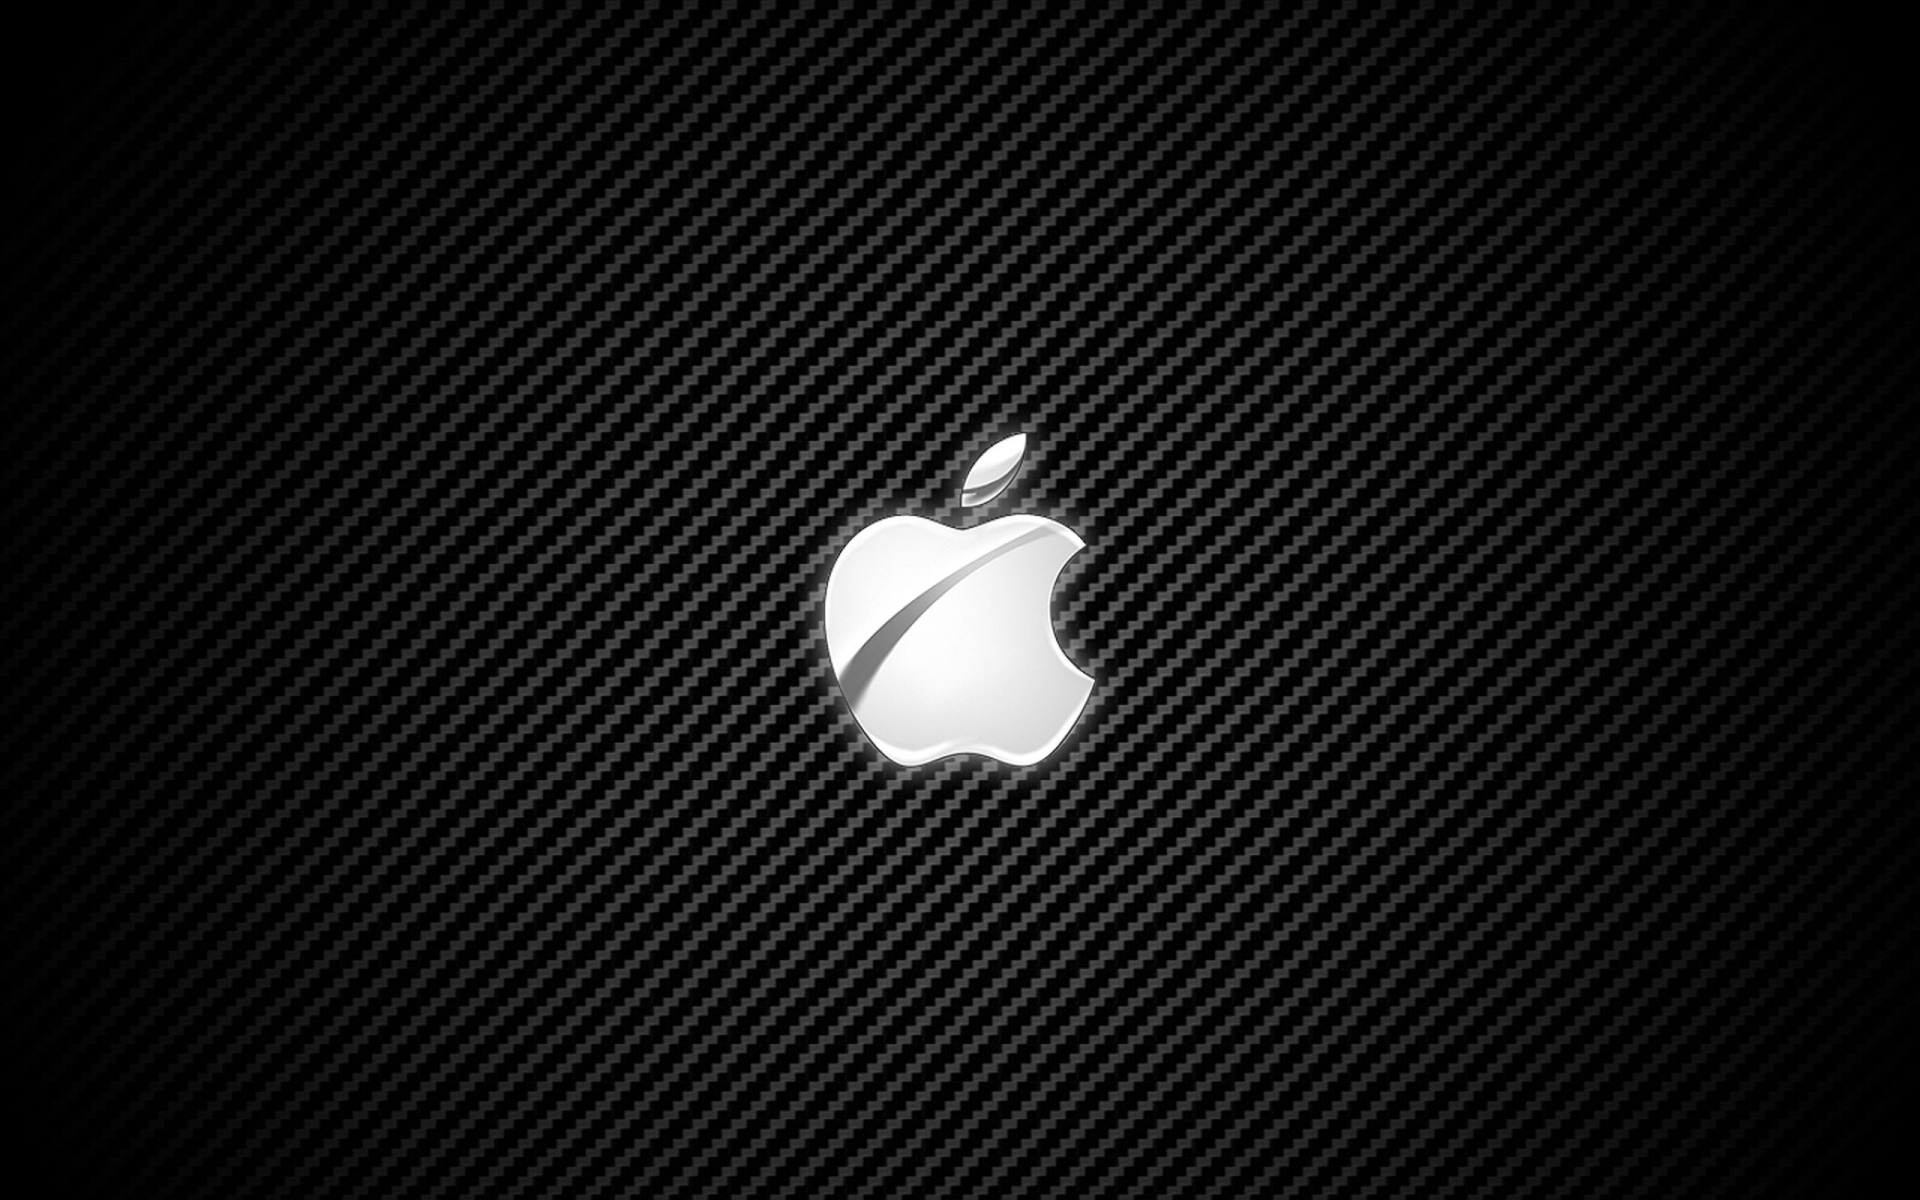 Wallpaper Full HD apple, brands, background, logos, black